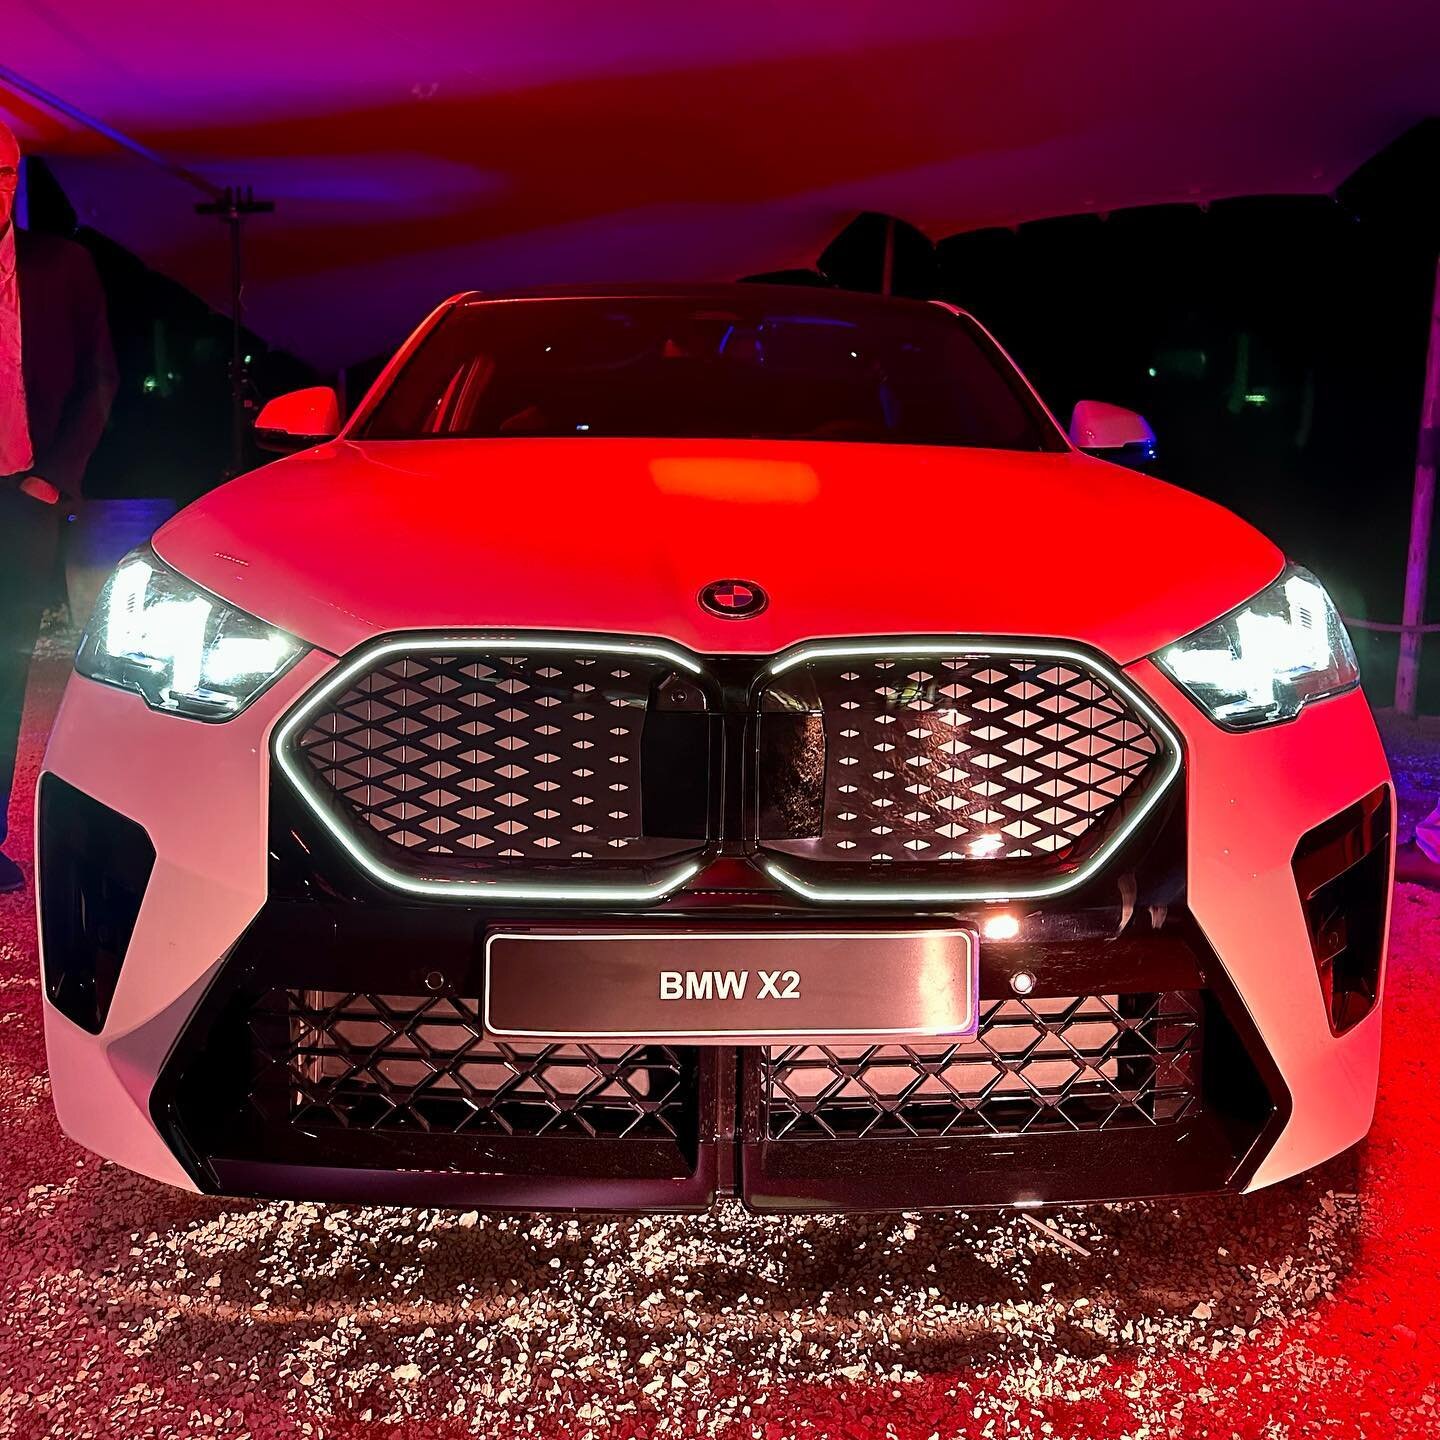 Belle soir&eacute;e de lancement du nouveau #BMW #X2 🔴🔵

Il existera en version essence, diesel, hybrid ou 100% &eacute;lectrique avec des prix catalogue &agrave; partir de 46000&euro; 👌

Commandez le votre &agrave; tarif pr&eacute;f&eacute;rentie